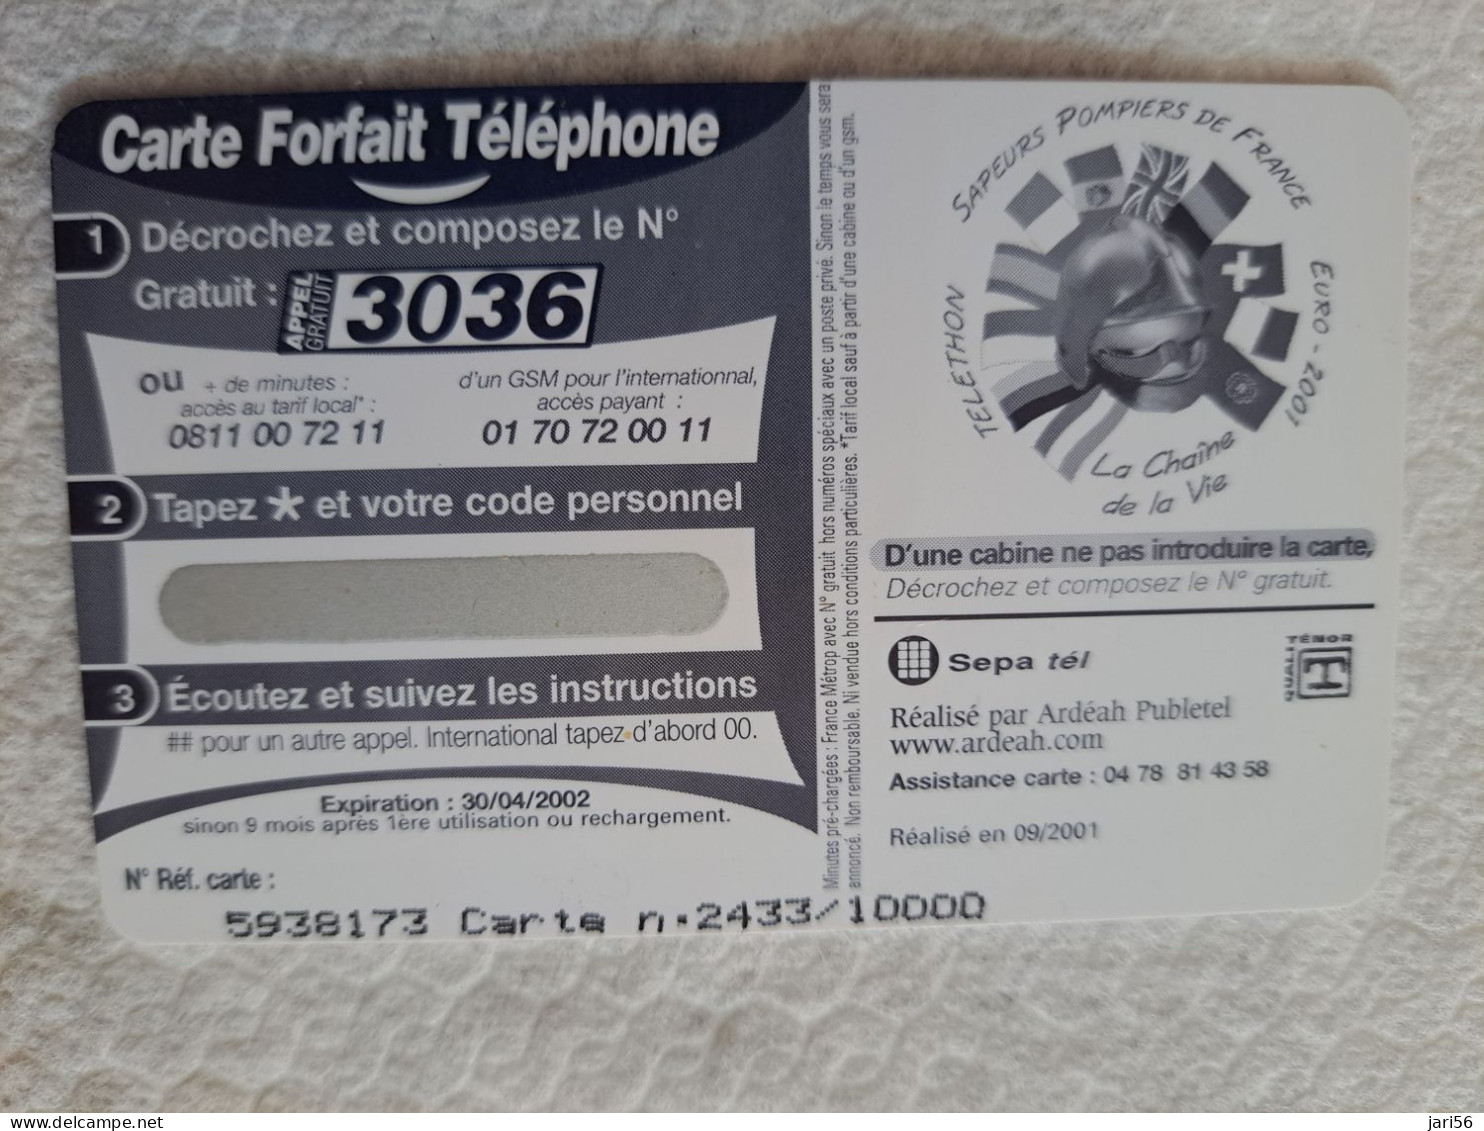 FRANCE/ 20 FR/ €3,05 / TELETHON 2001/ SAPEURS POMPIERS DE FRANCE     /   PREPAID  / MINT    ** 14563** - Mobicartes: Móviles/SIM)